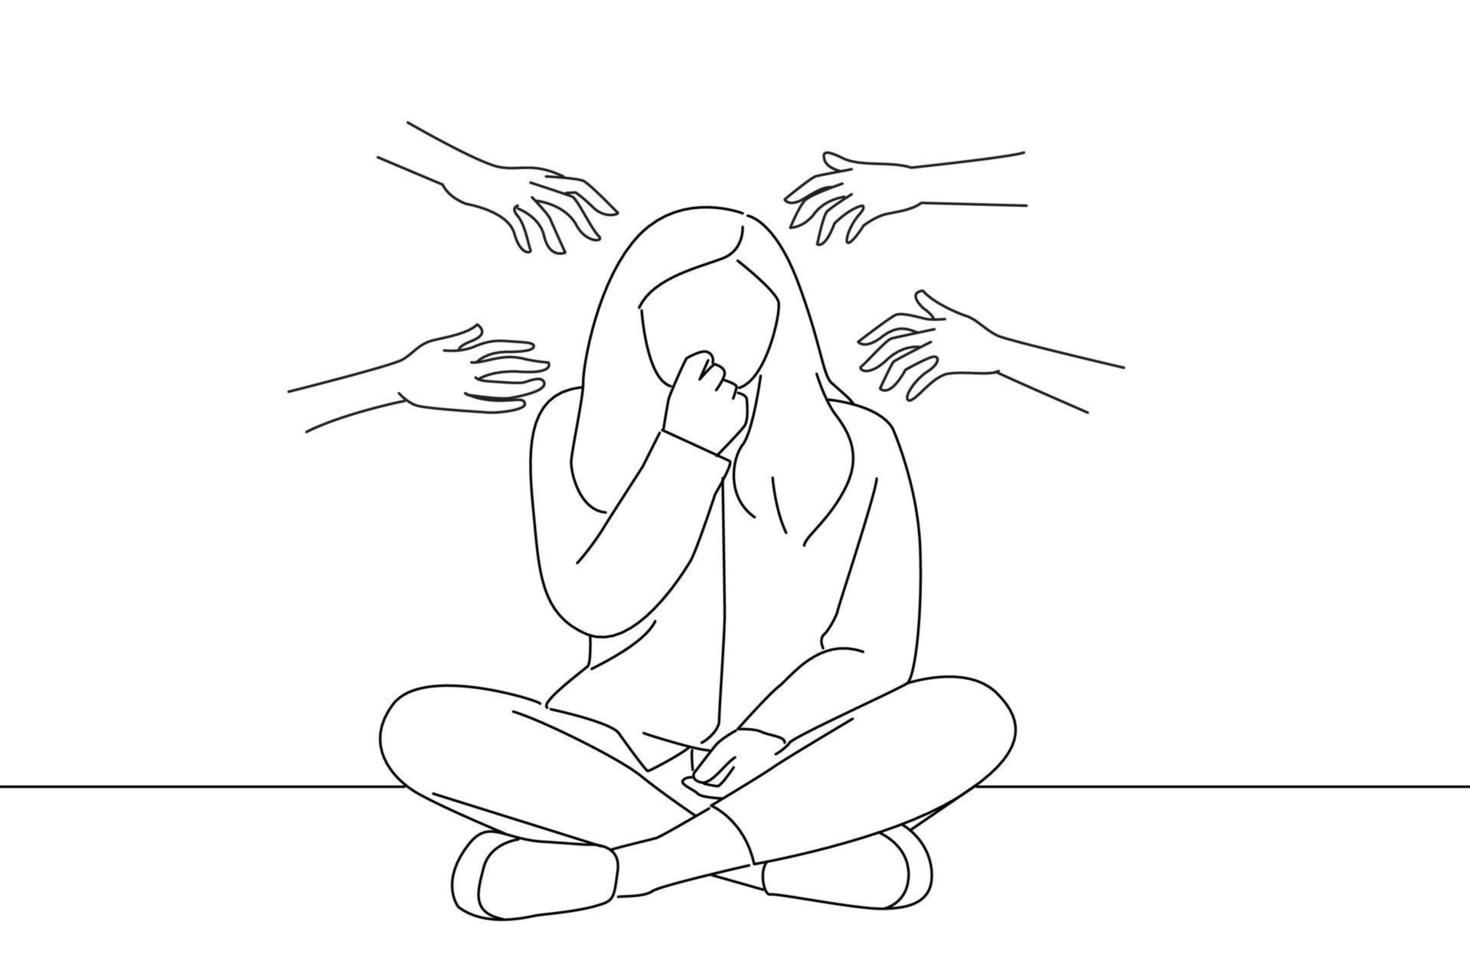 illustration einer frau, die gegen eine mauer sitzt und nägel beißt, nervös und sehr ängstlich und ängstlich für die zukunft, fühlt panik und stress. Linienkunststil vektor